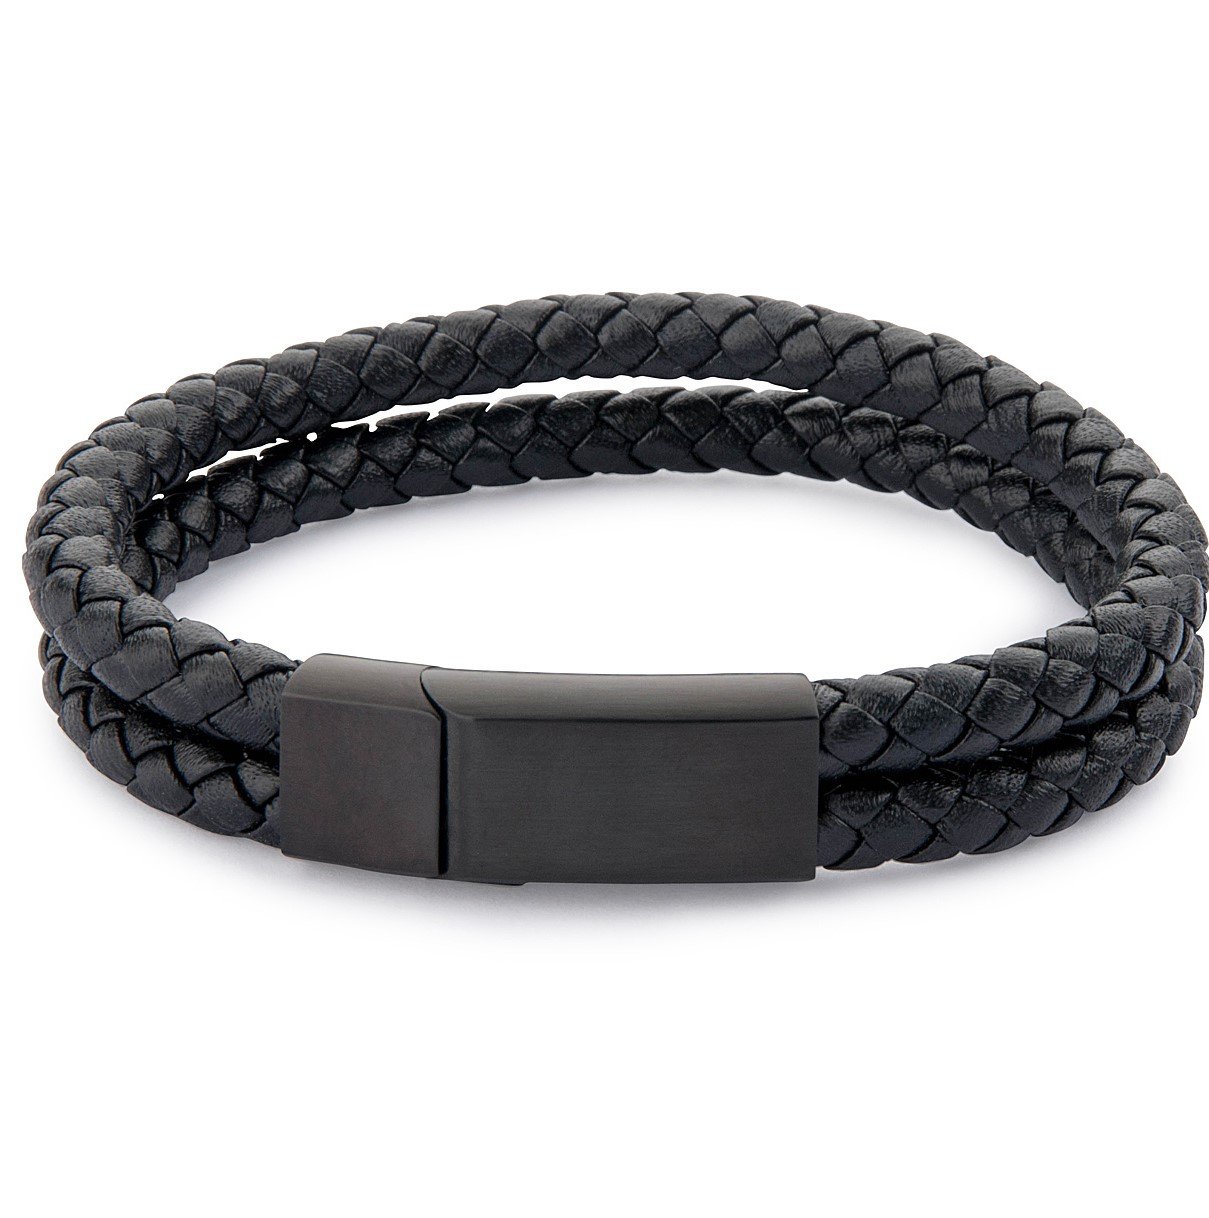 Men's Bracelets. Leather, Steel And Cuff Bracelets Online - KAVALRI